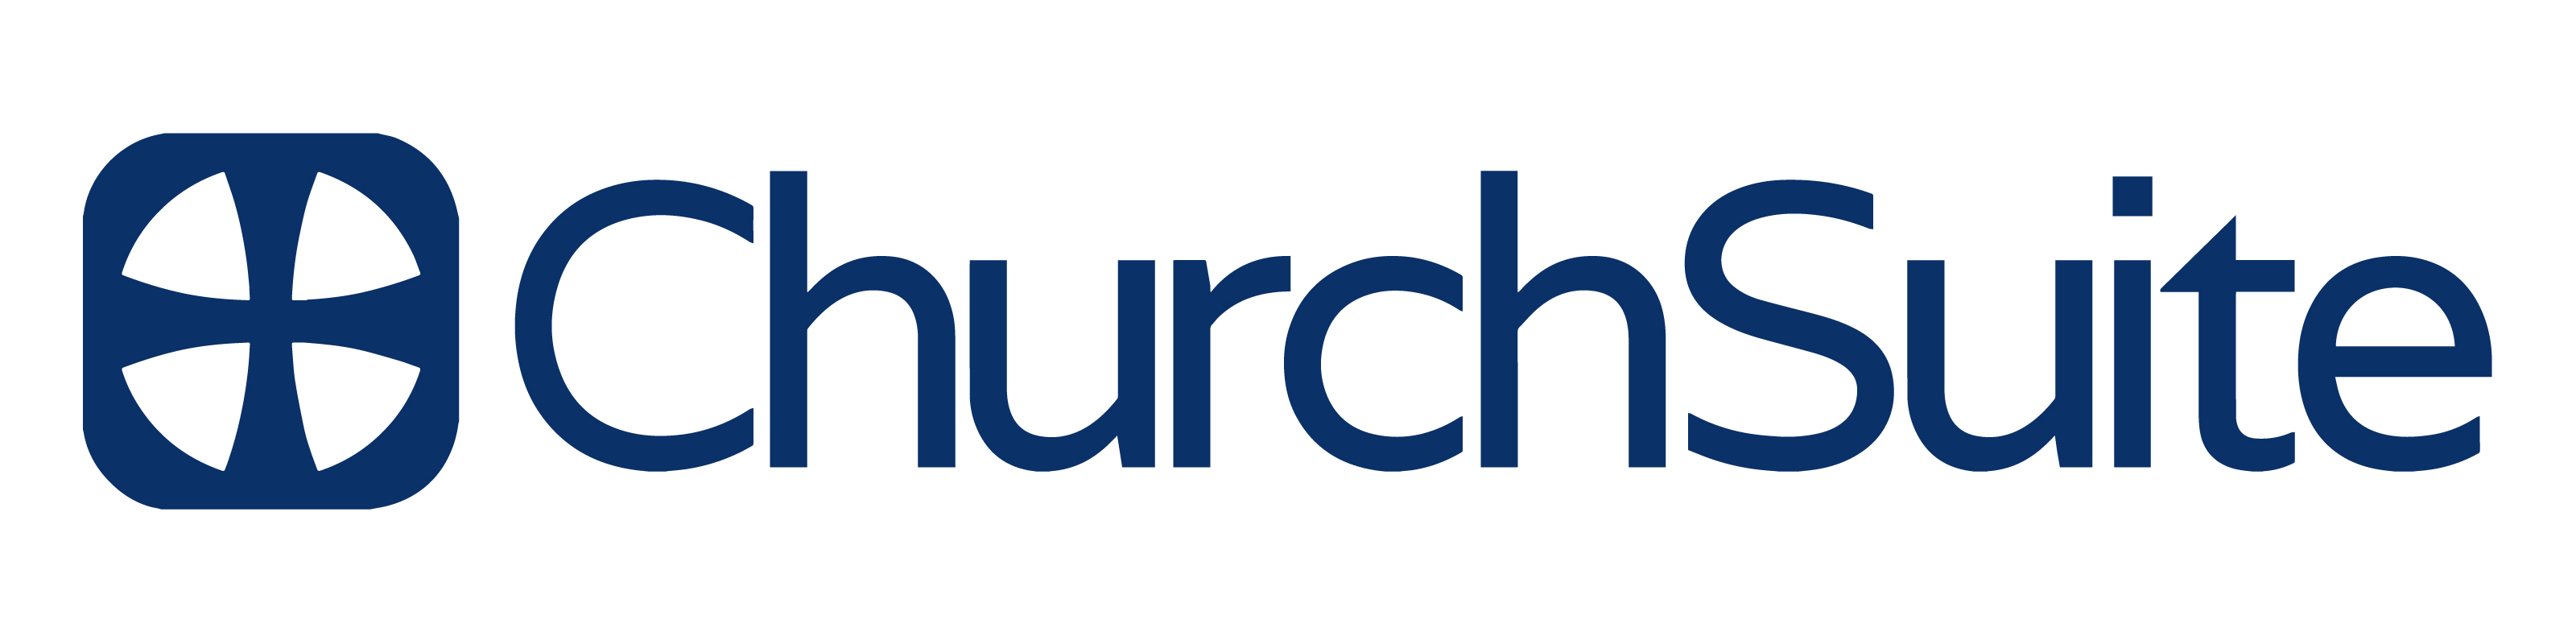 ChurchSuite logo